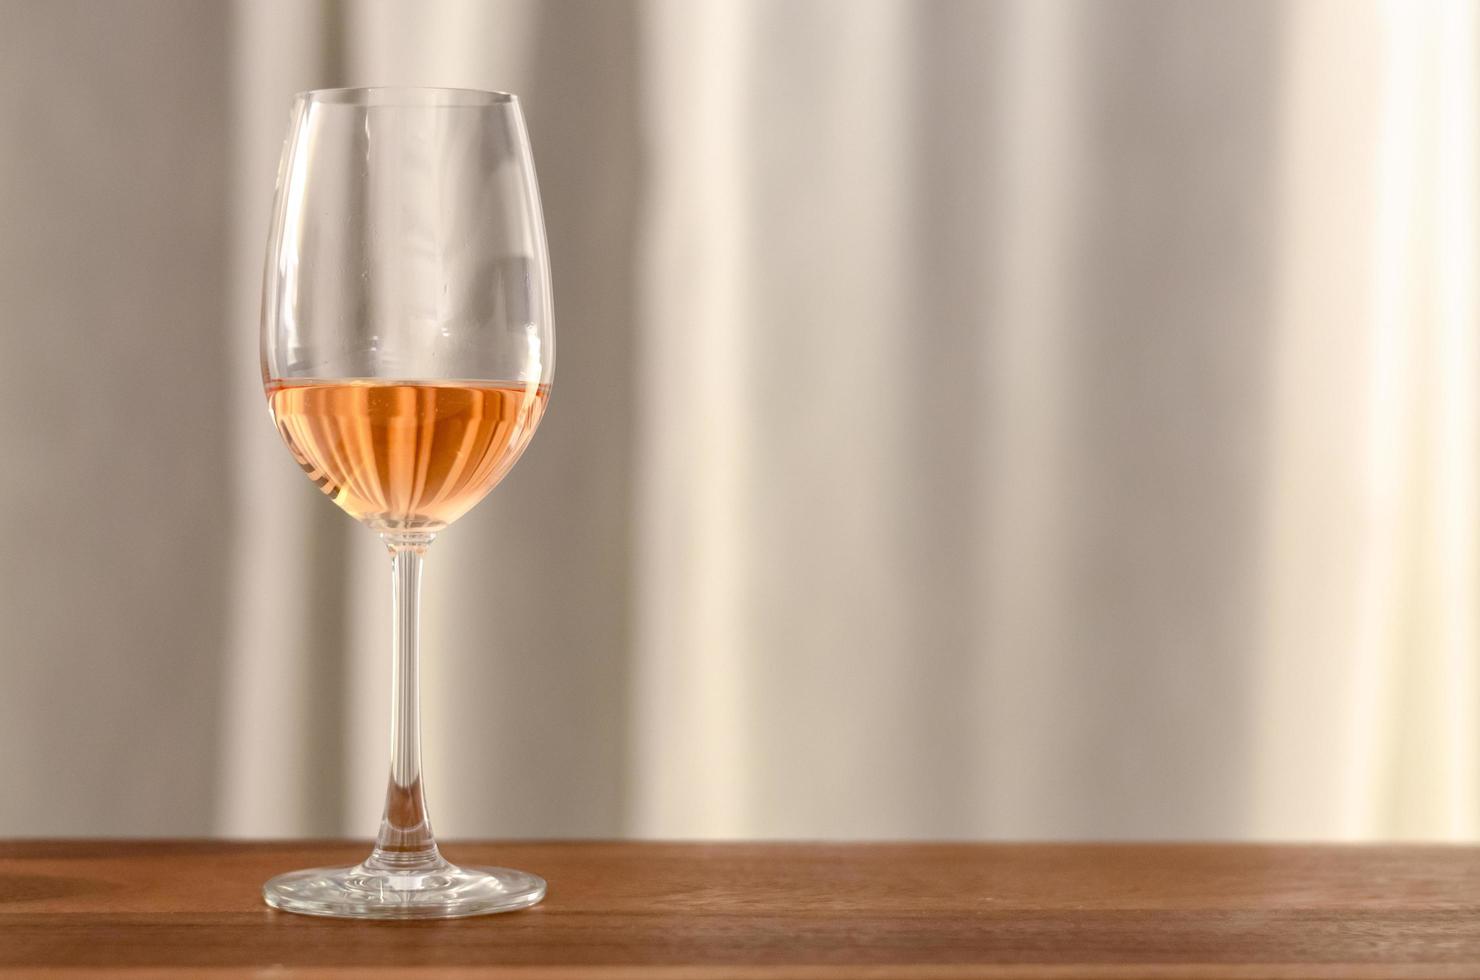 le verre de vin rosé sur une table en bois photo